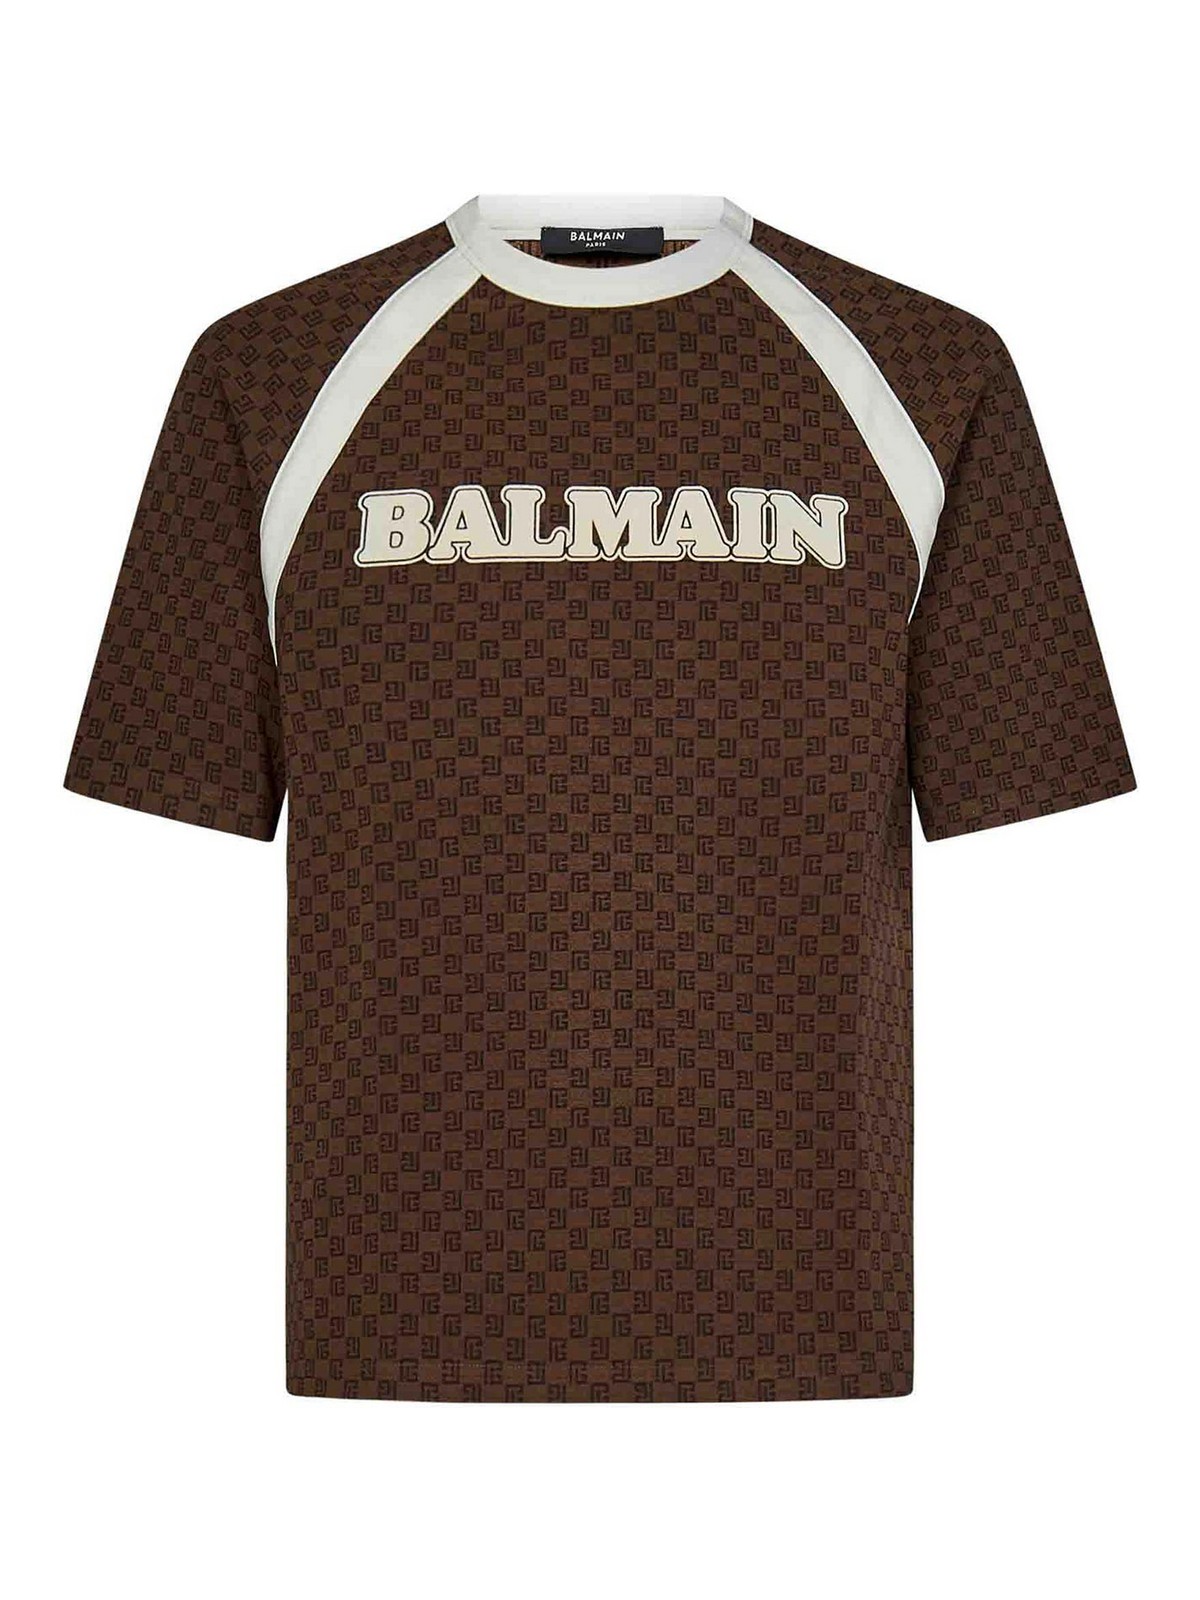 Balmain Paris T-shirt in Brown for Men